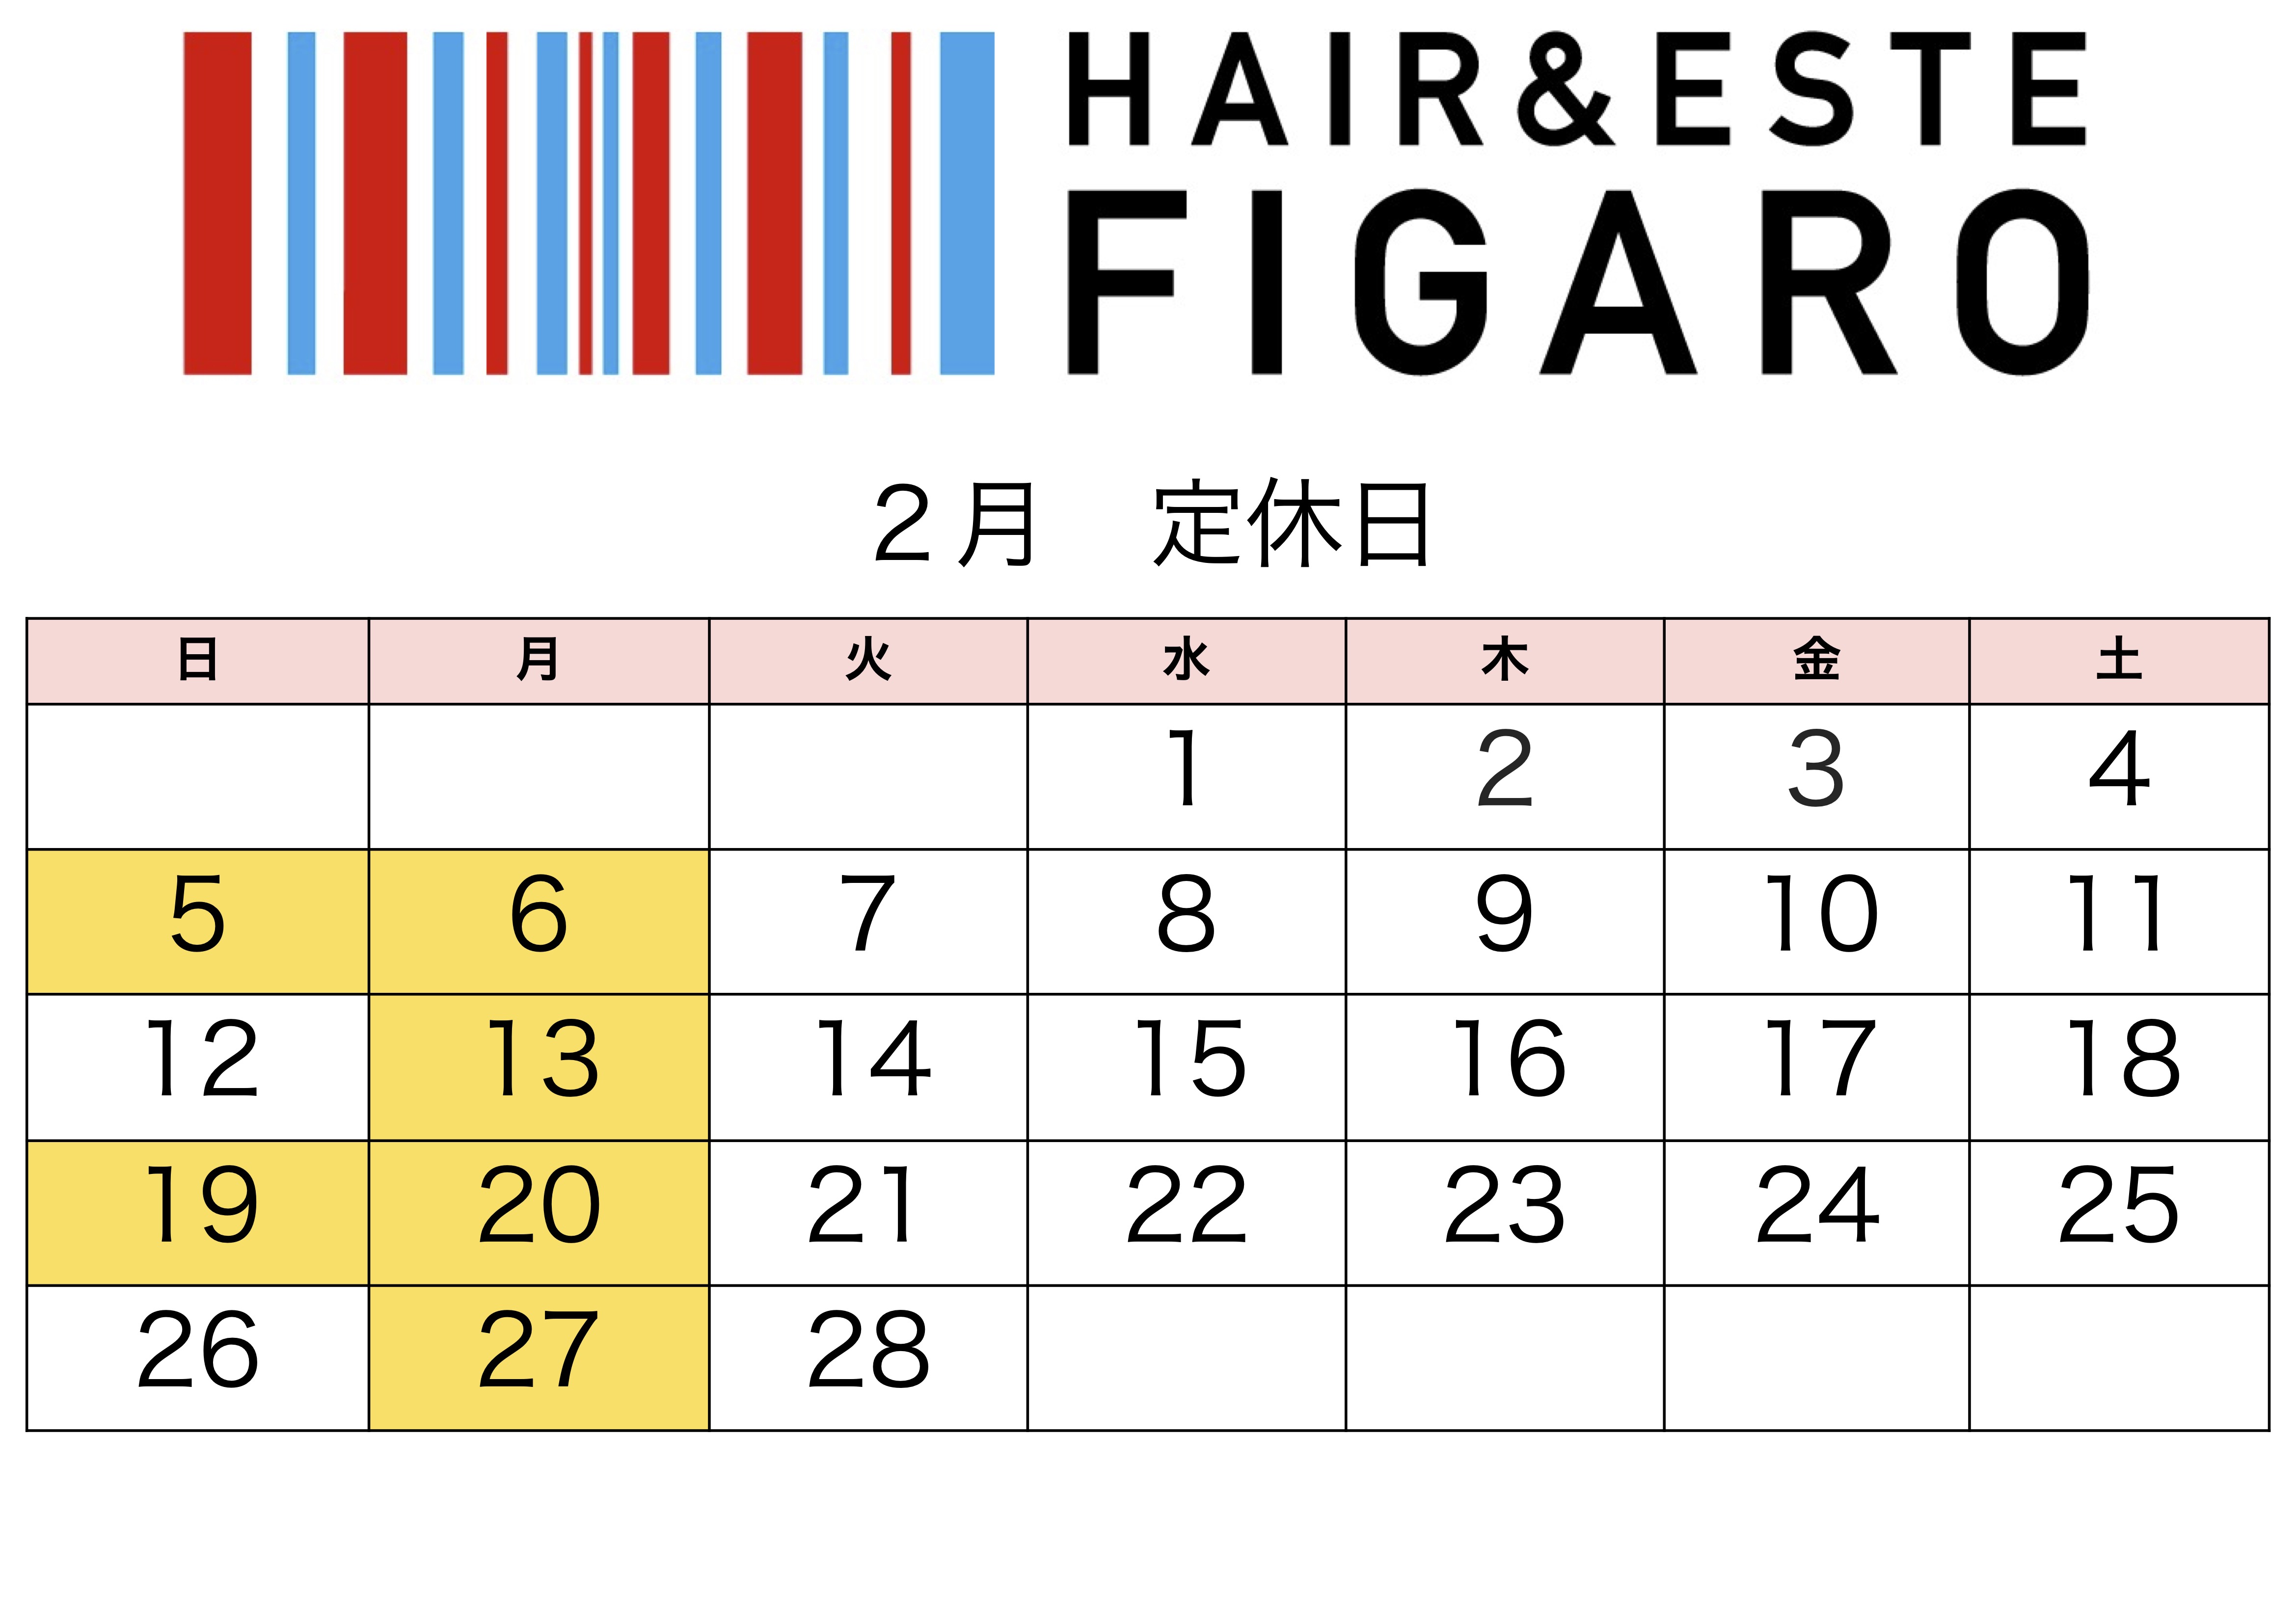 http://figaro-hair.com/blog/%EF%BC%92%EF%BC%90%EF%BC%92%EF%BC%93%E3%80%81%EF%BC%92.jpg